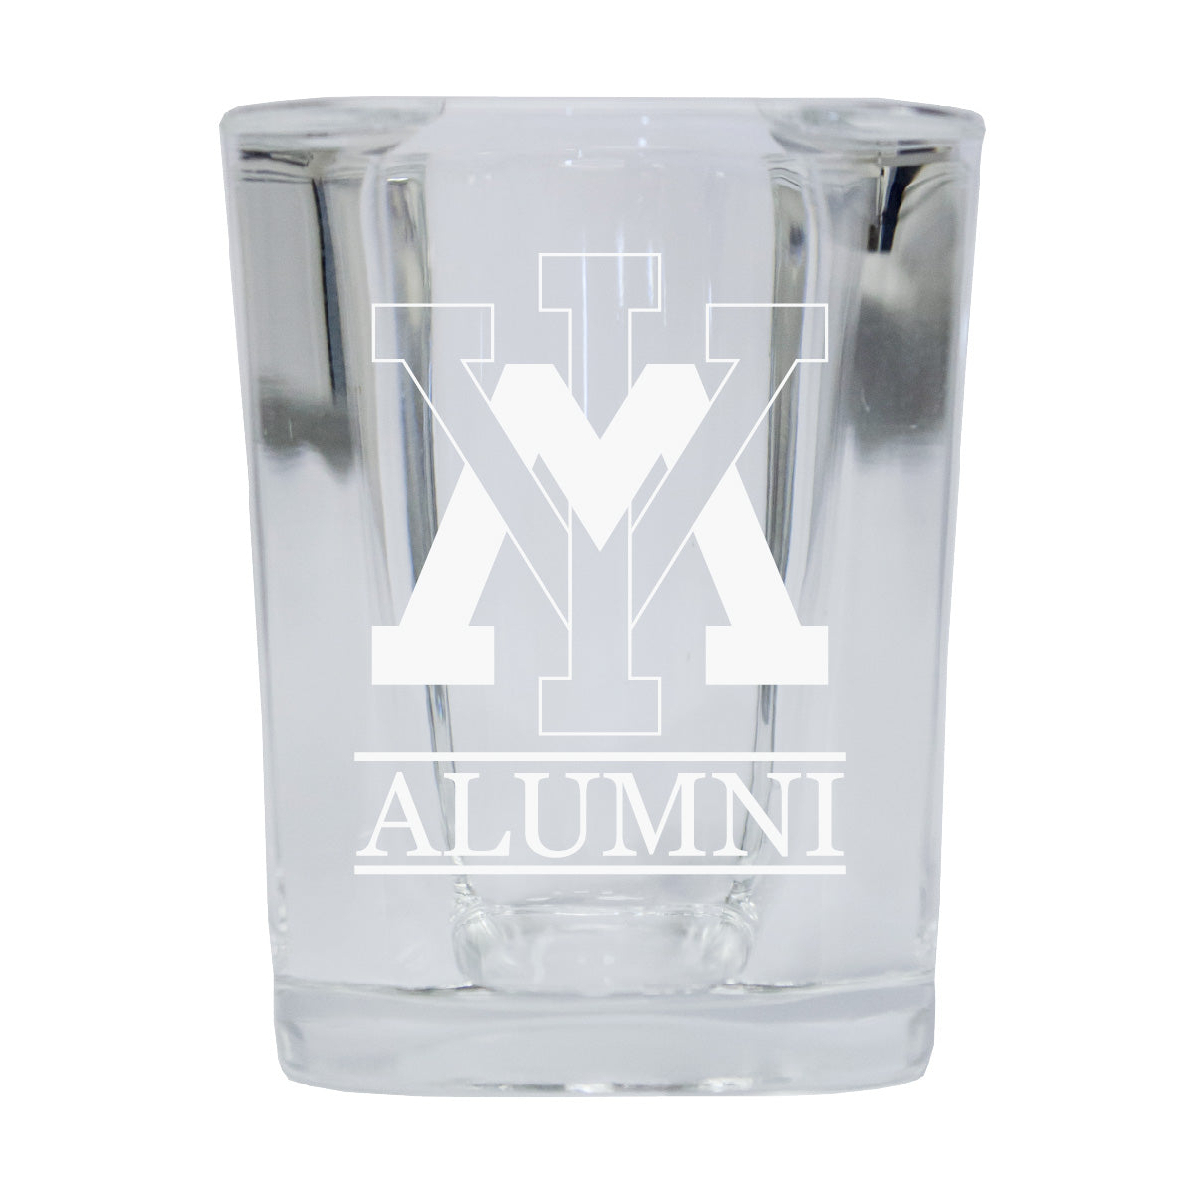 VMI Keydets Alumni Etched Square Shot Glass